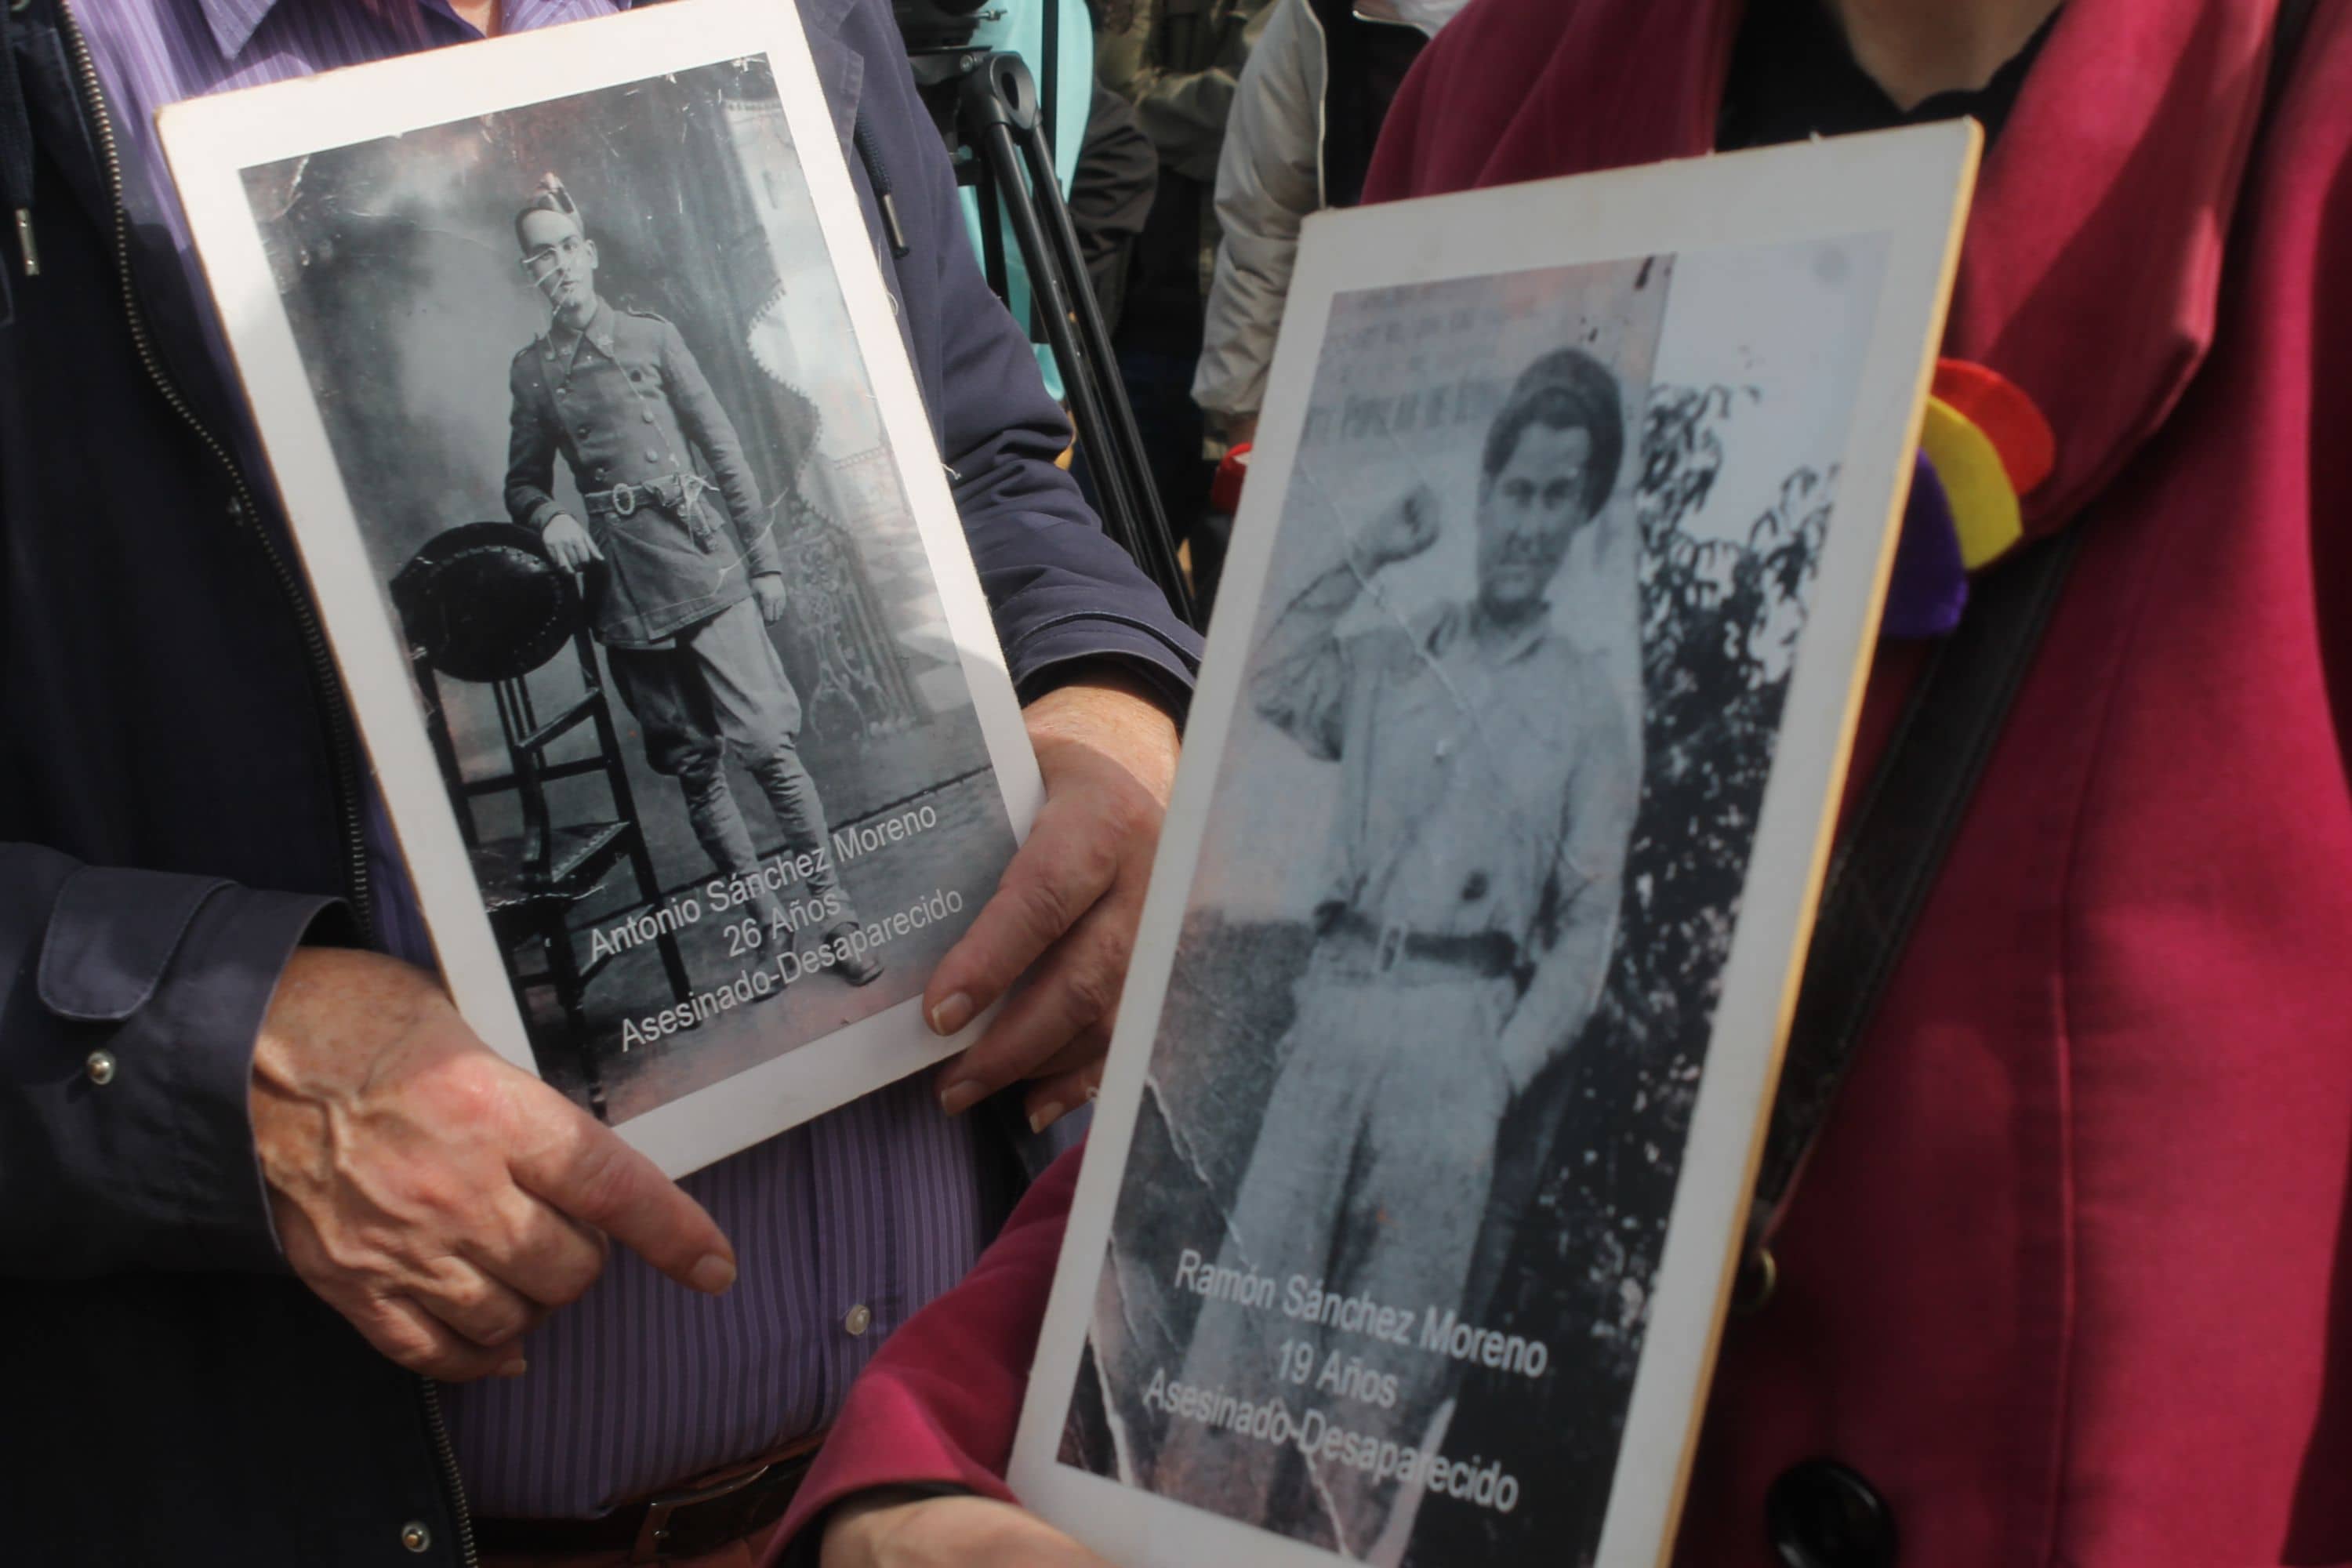 Fotografías en memoria de las personas inhumadas en Pico Reja.